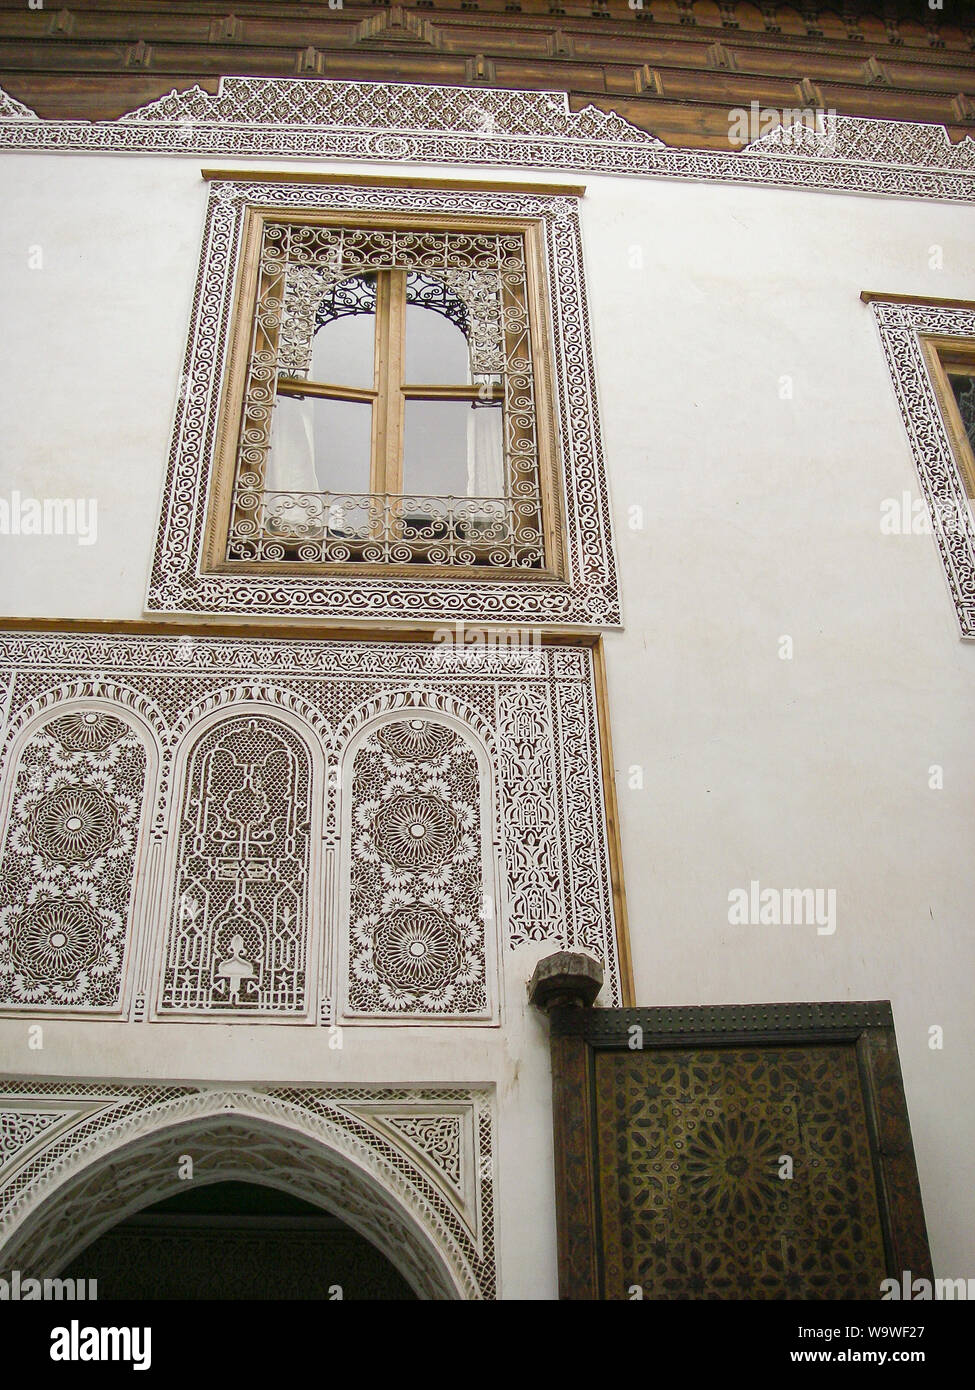 Marrakech, Maroc April 02,2010 : façade dans une cour d'une maison arabe traditionnelle Riad avec windows Banque D'Images